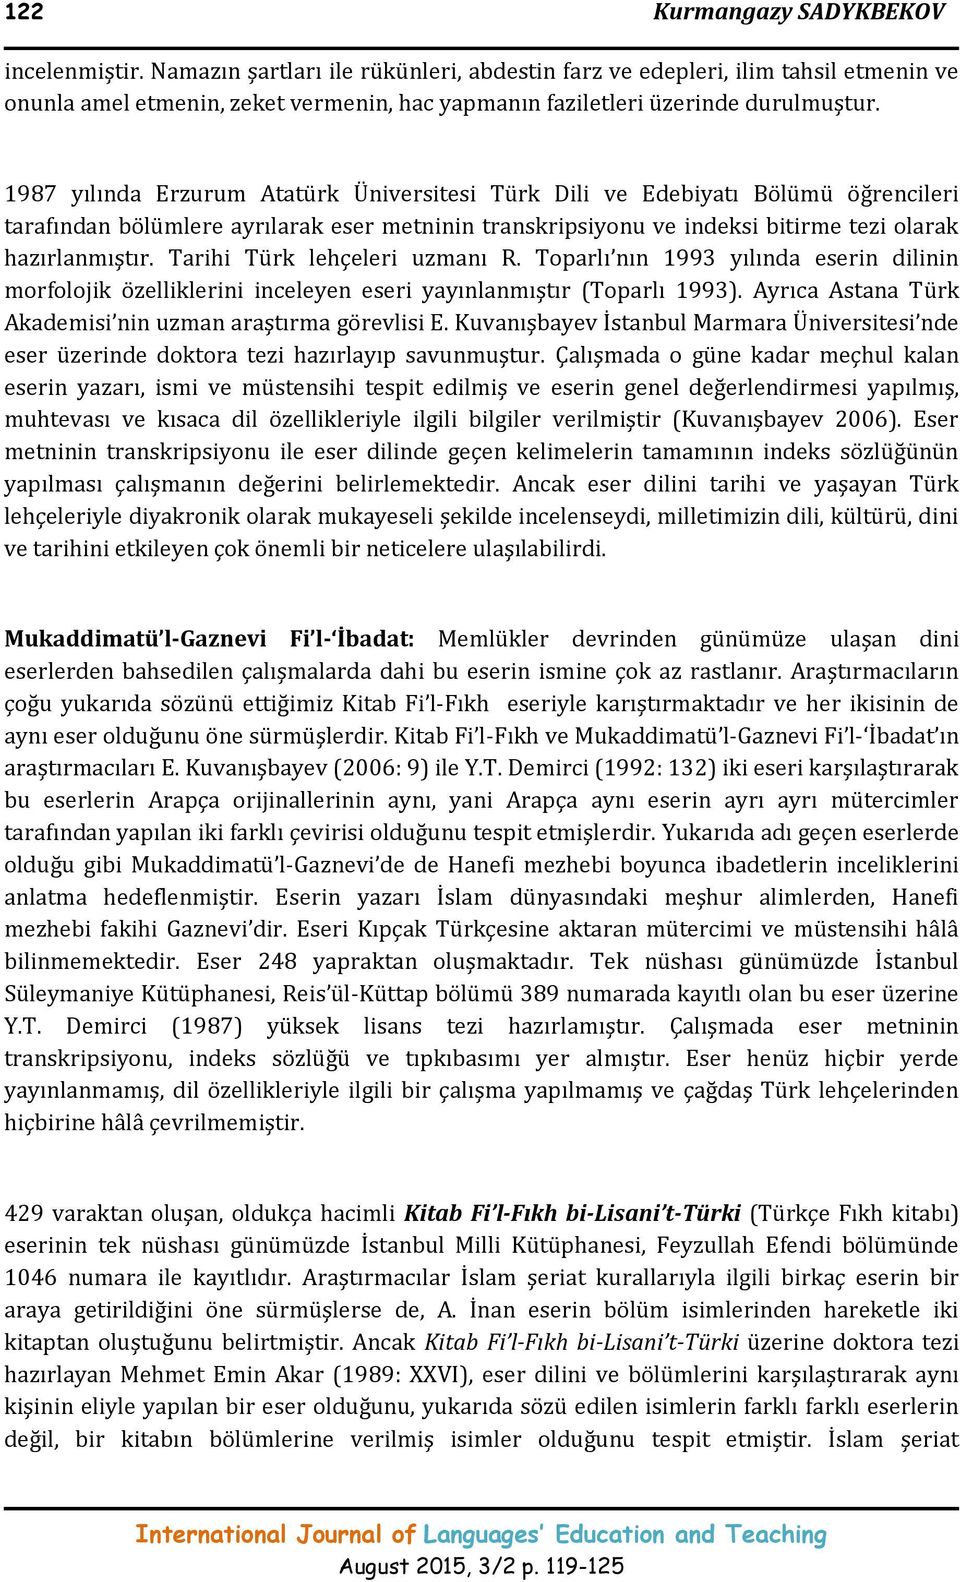 1987 yılında Erzurum Atatürk Üniversitesi Türk Dili ve Edebiyatı Bölümü öğrencileri tarafından bölümlere ayrılarak eser metninin transkripsiyonu ve indeksi bitirme tezi olarak hazırlanmıştır.